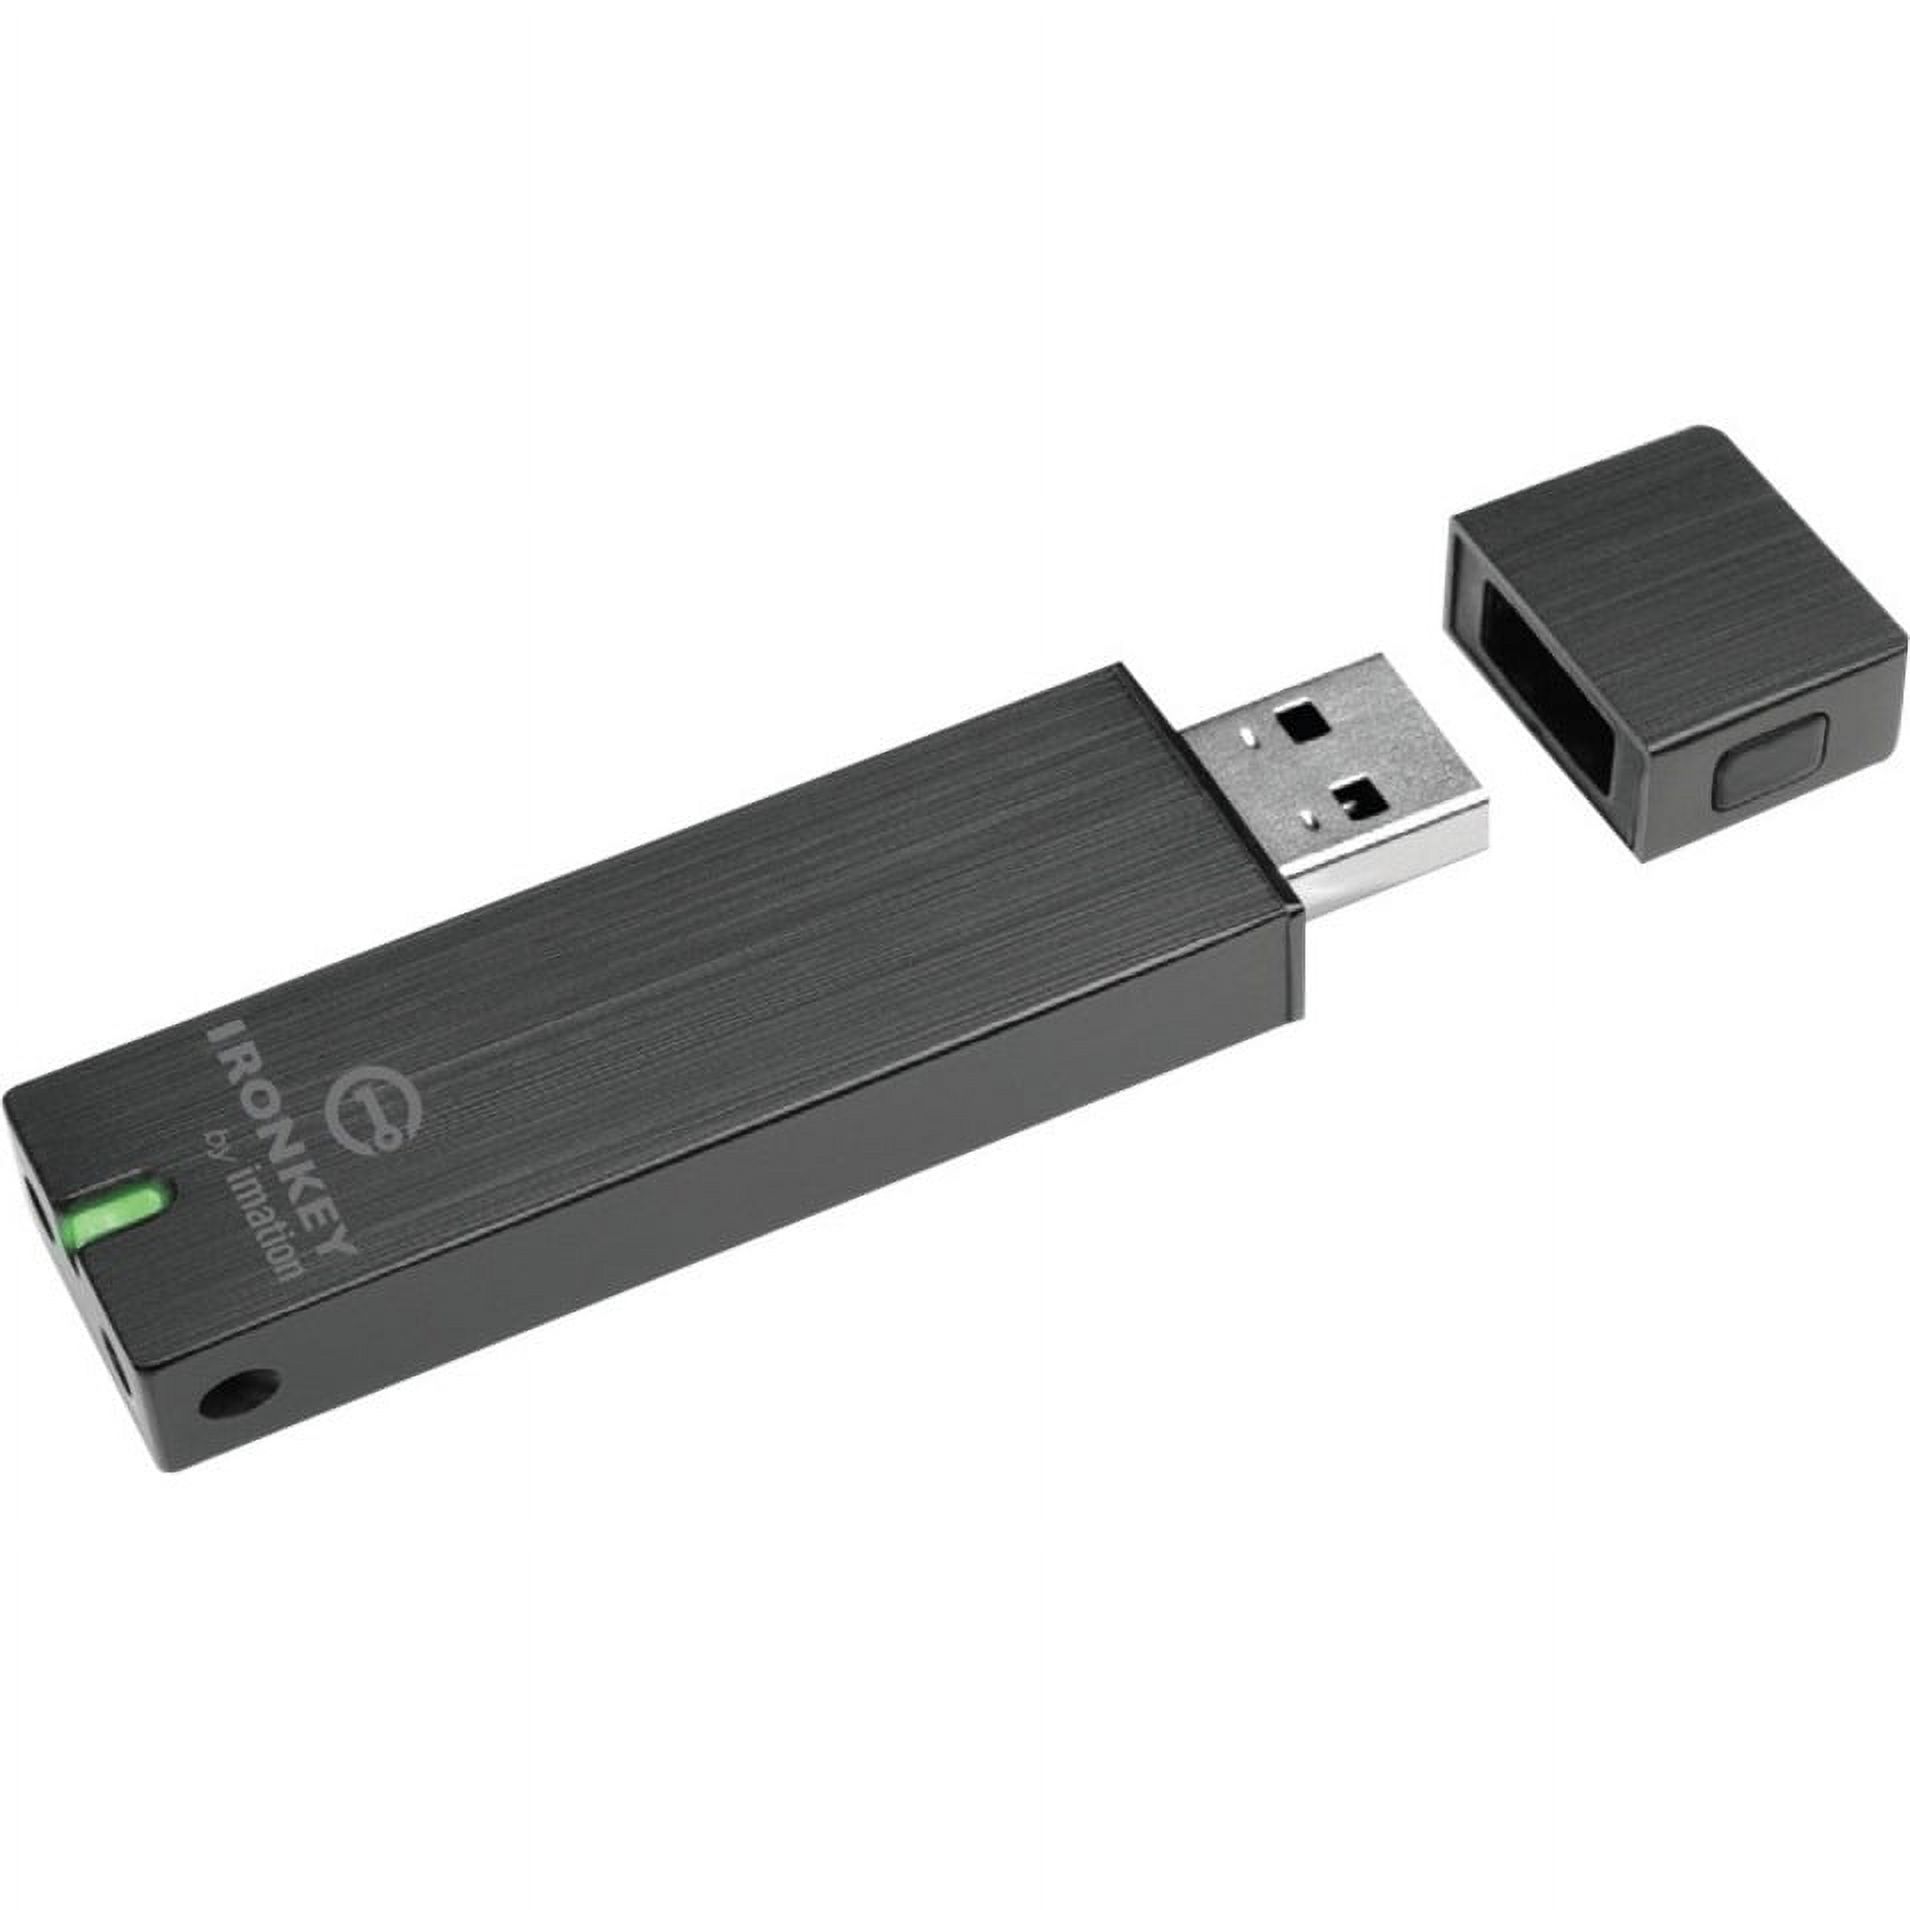 IronKey 2GB Basic S250 USB 2.0 Flash Drive - image 2 of 4